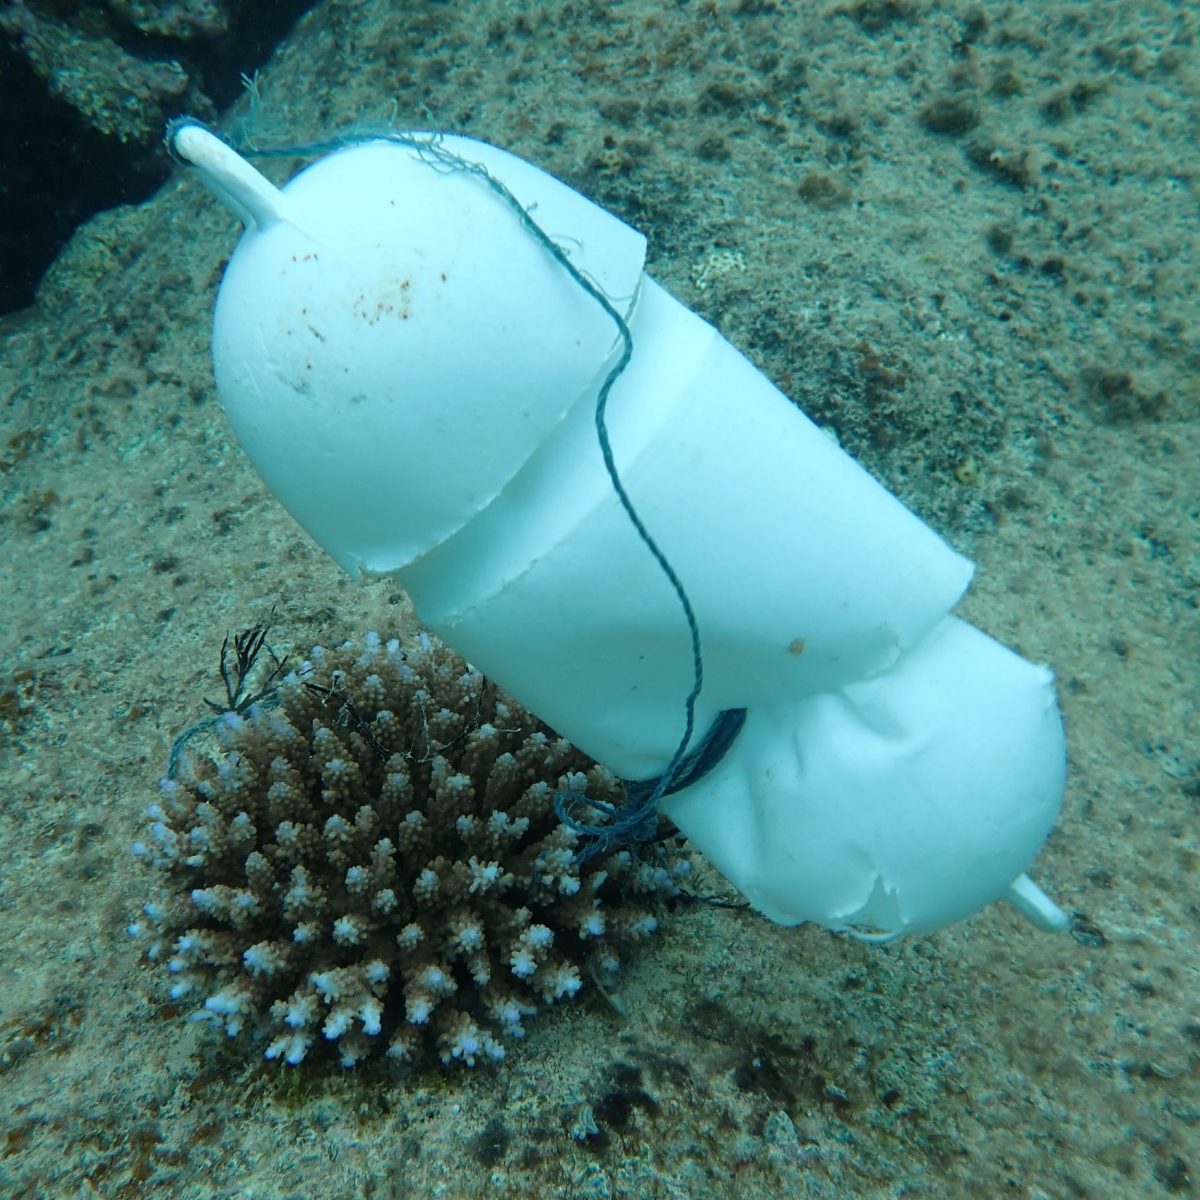 サンゴ礁を守る第一歩は知ることから